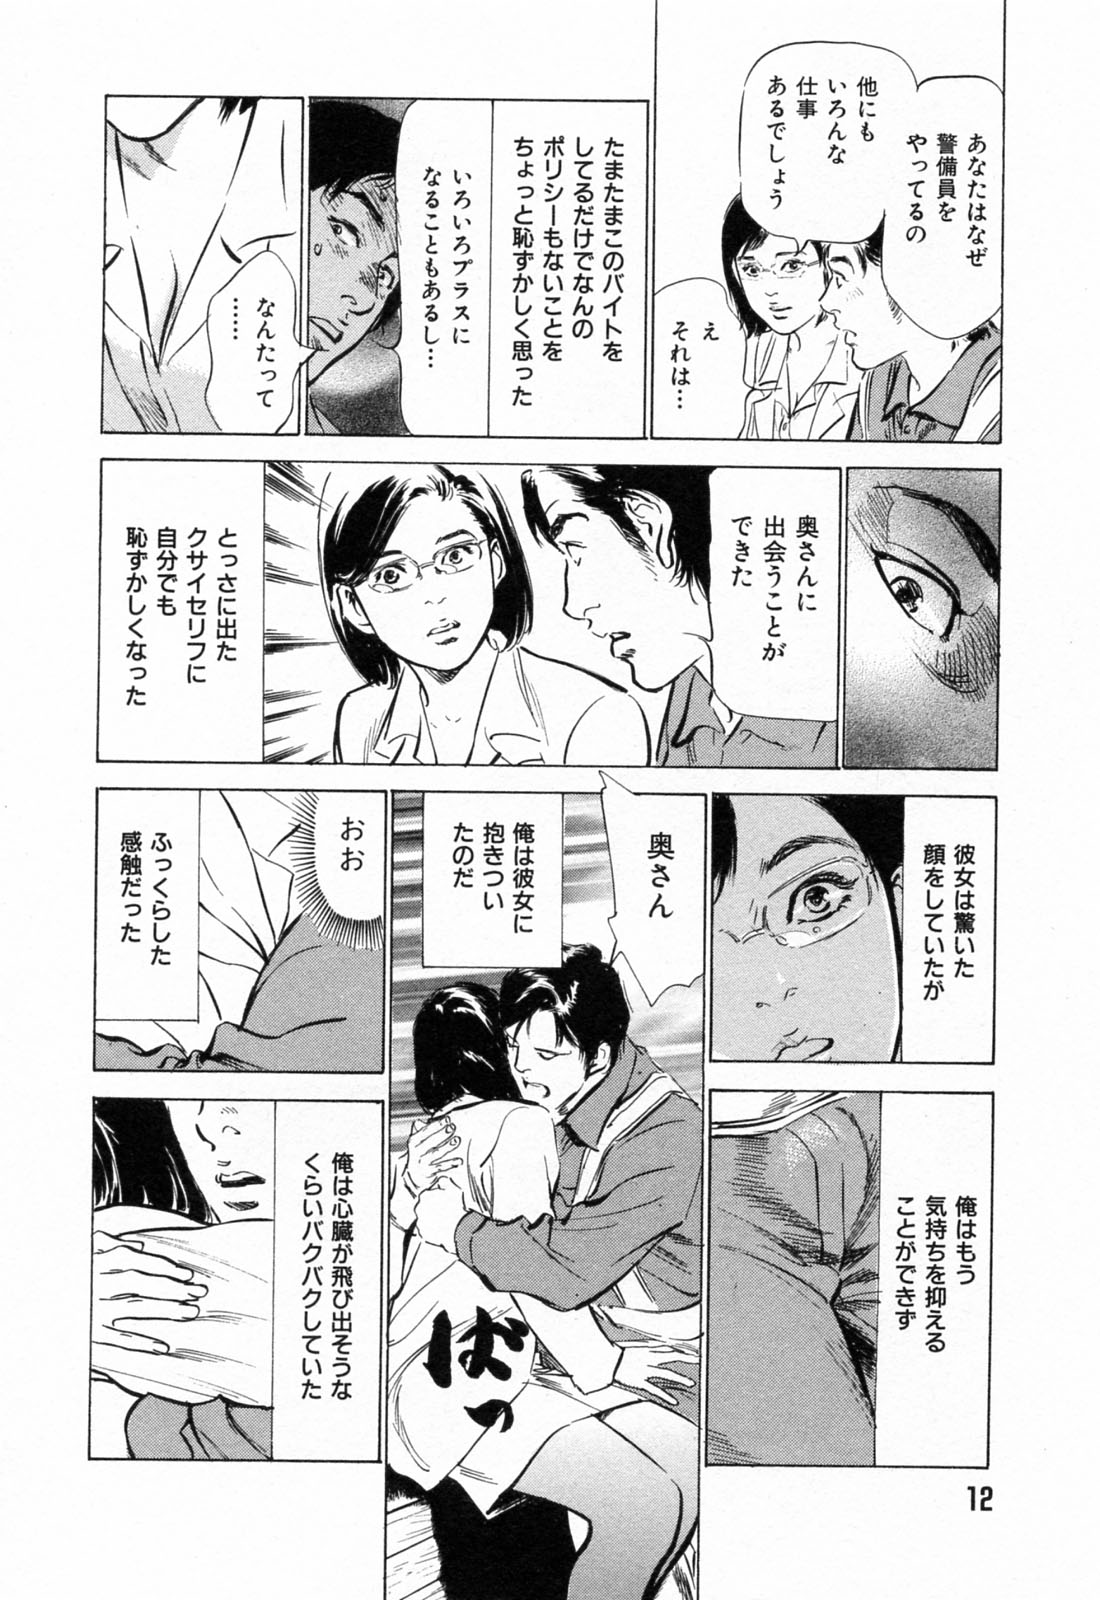 [Hazuki Kaoru] Gokinjo Okusama no Naishobanashi 1 page 14 full